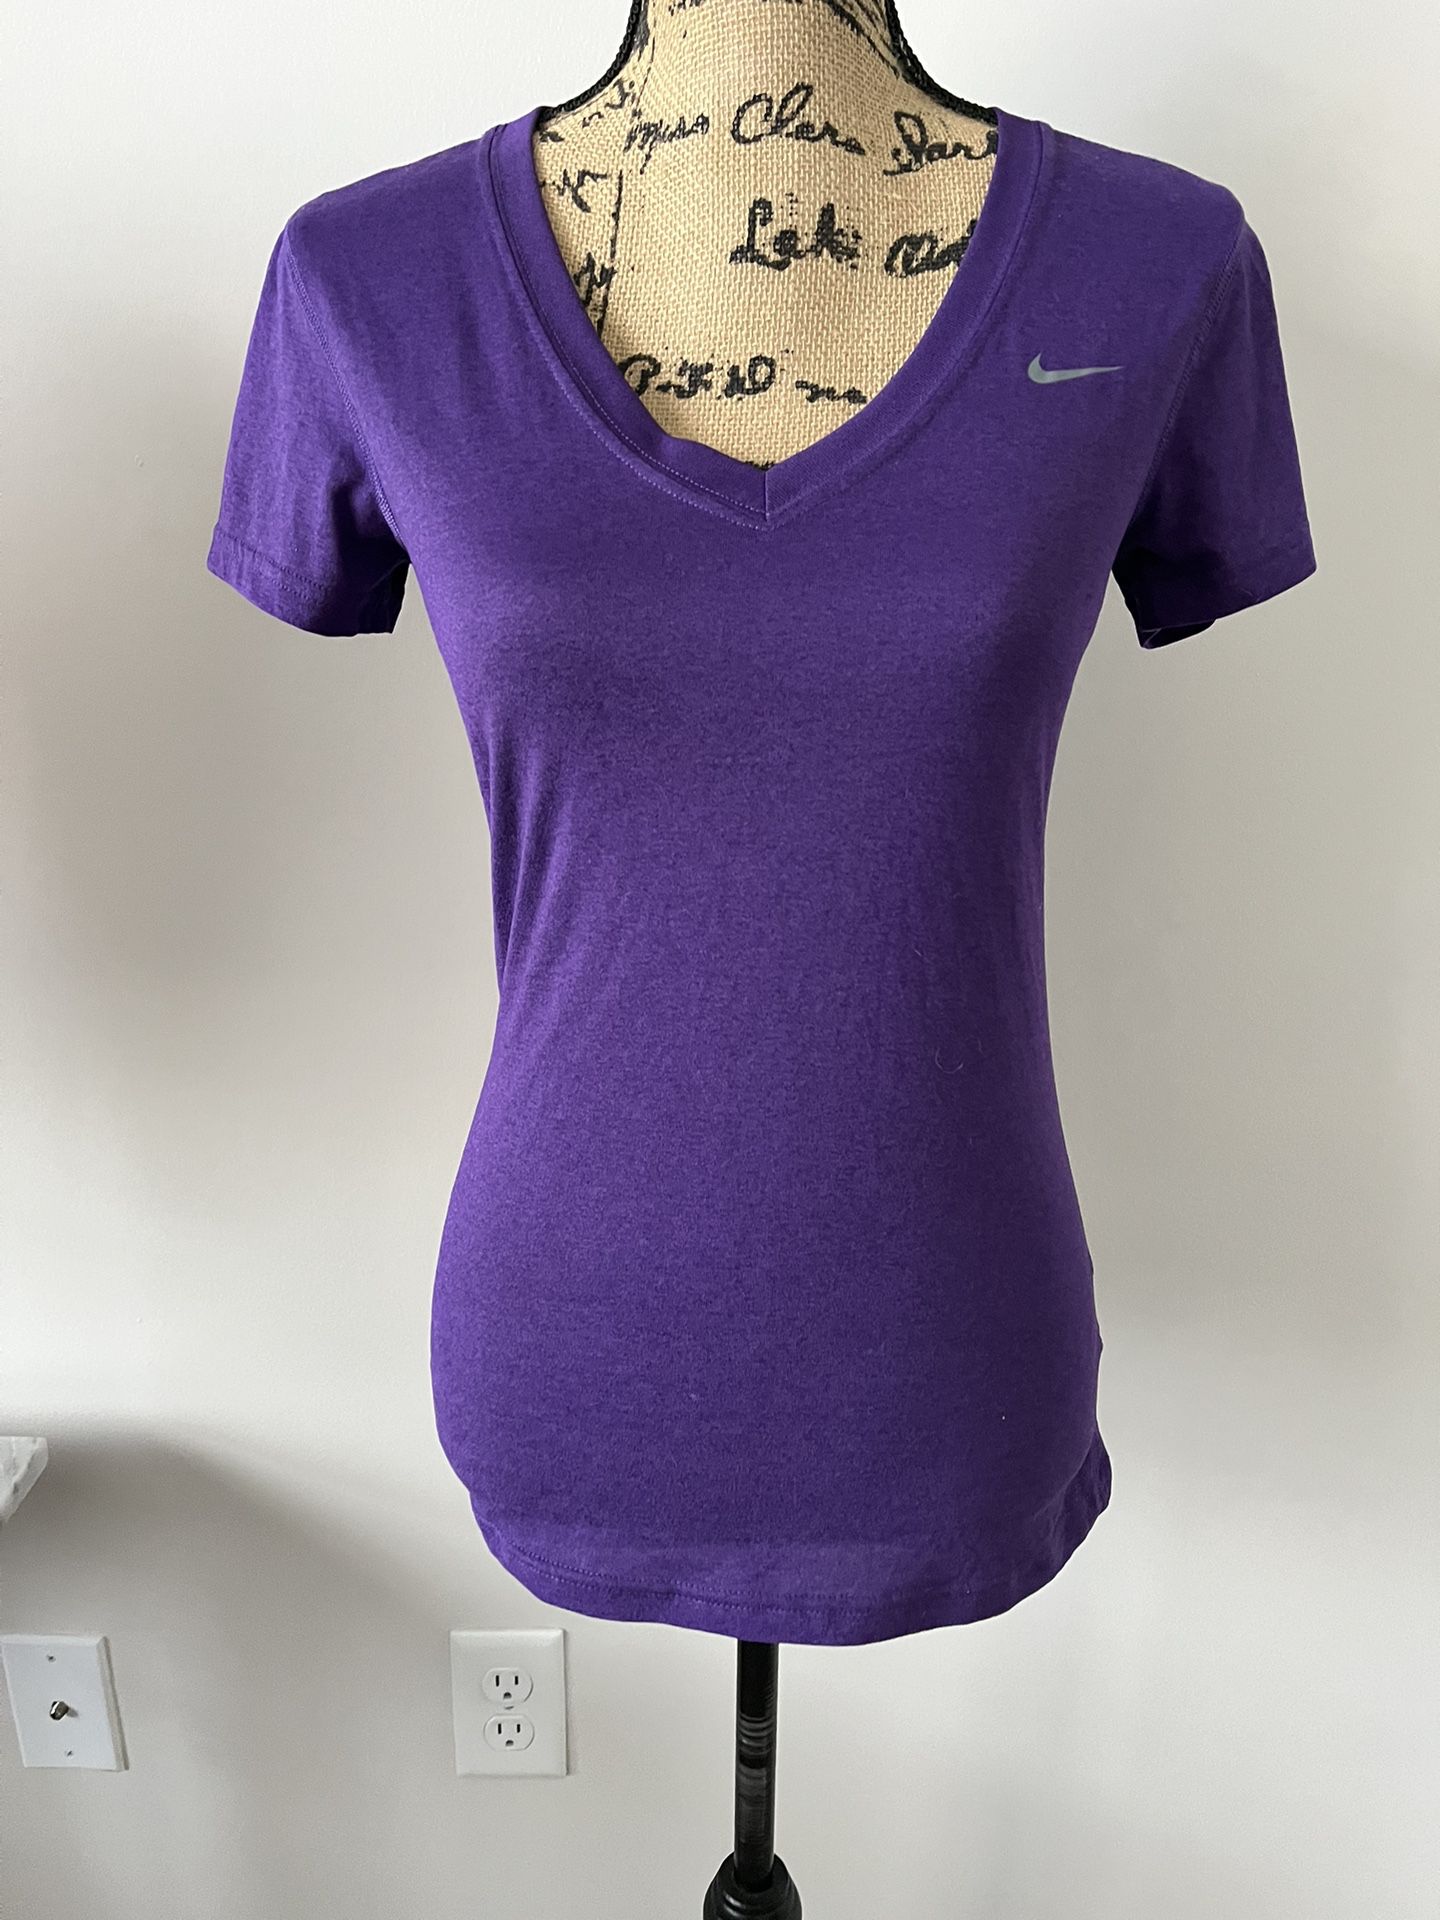 Womens Nike T-shirt